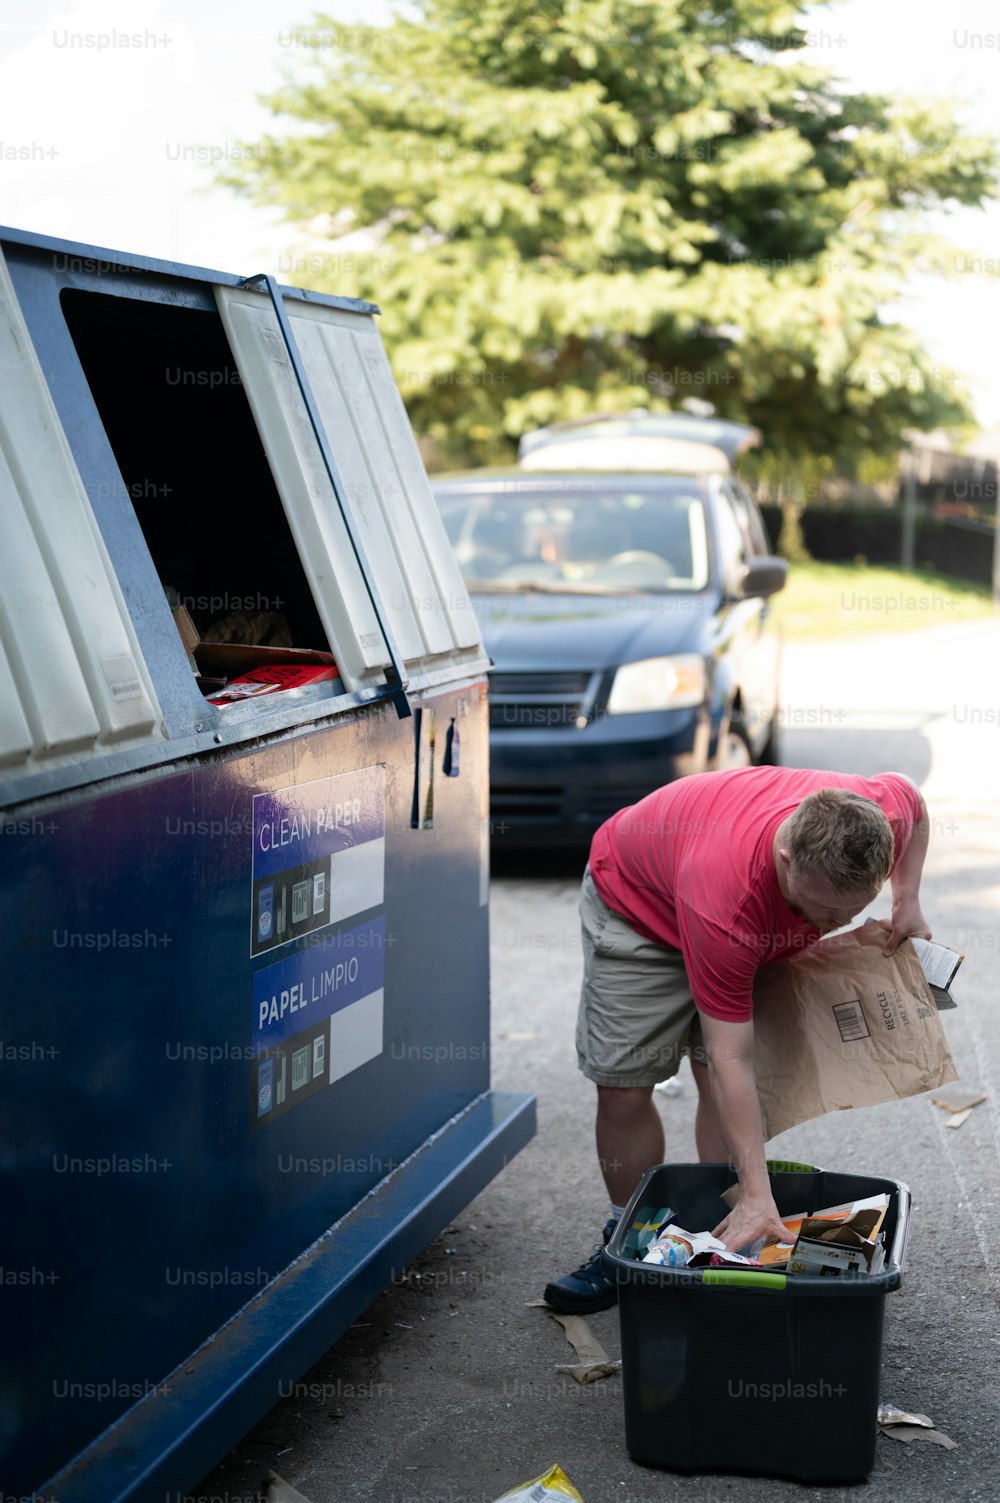 Un hombre descargando una caja de artículos de una furgoneta